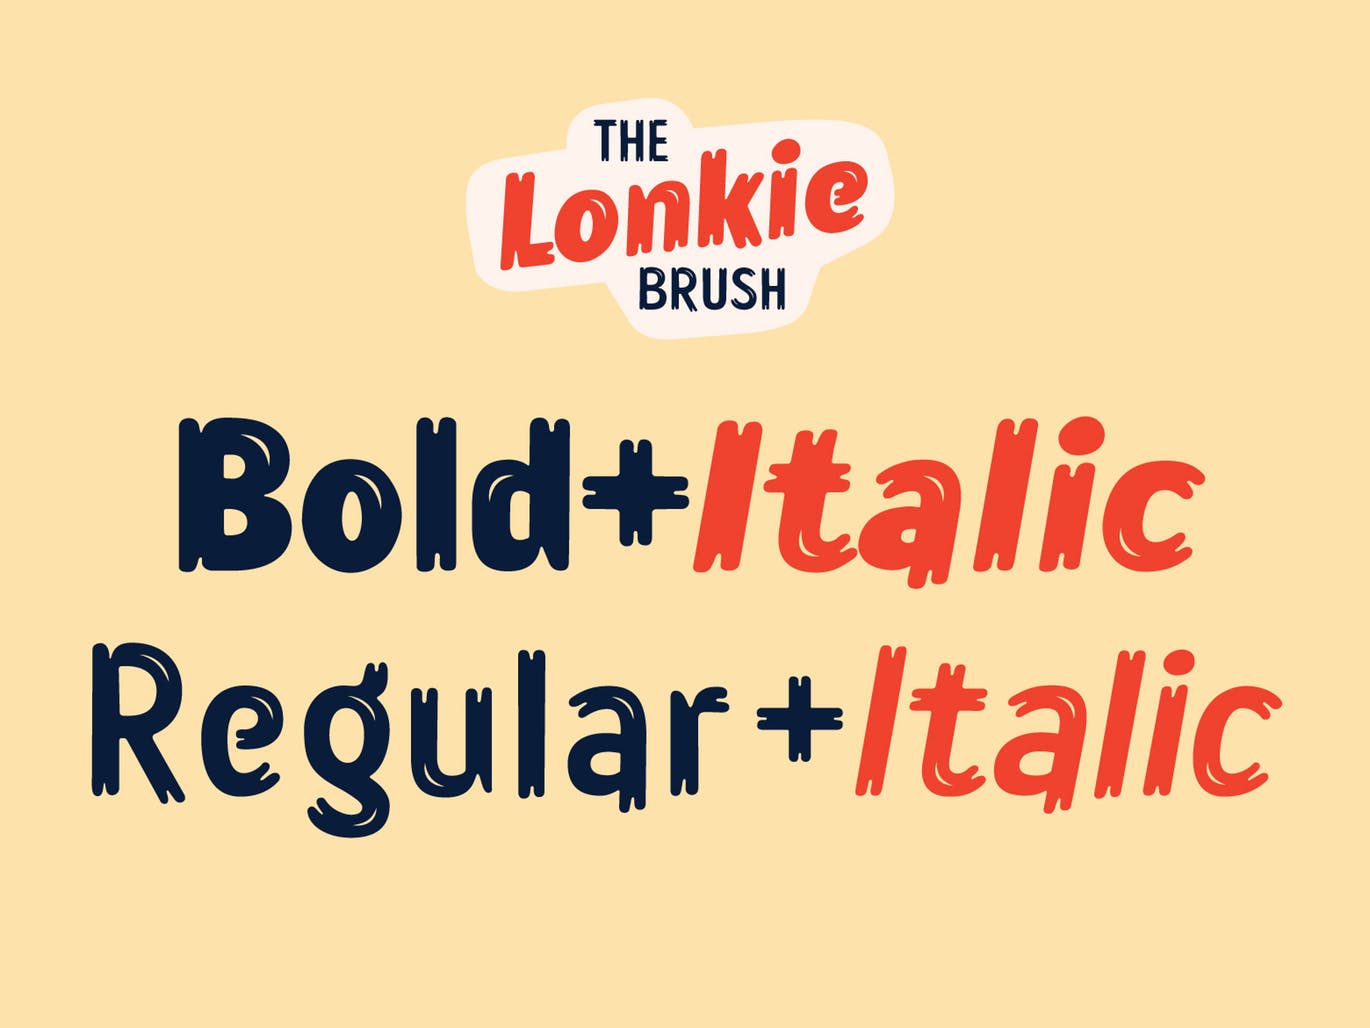 复古丹麦电影海报设计英文笔刷字体 Lonkie Brush插图(3)